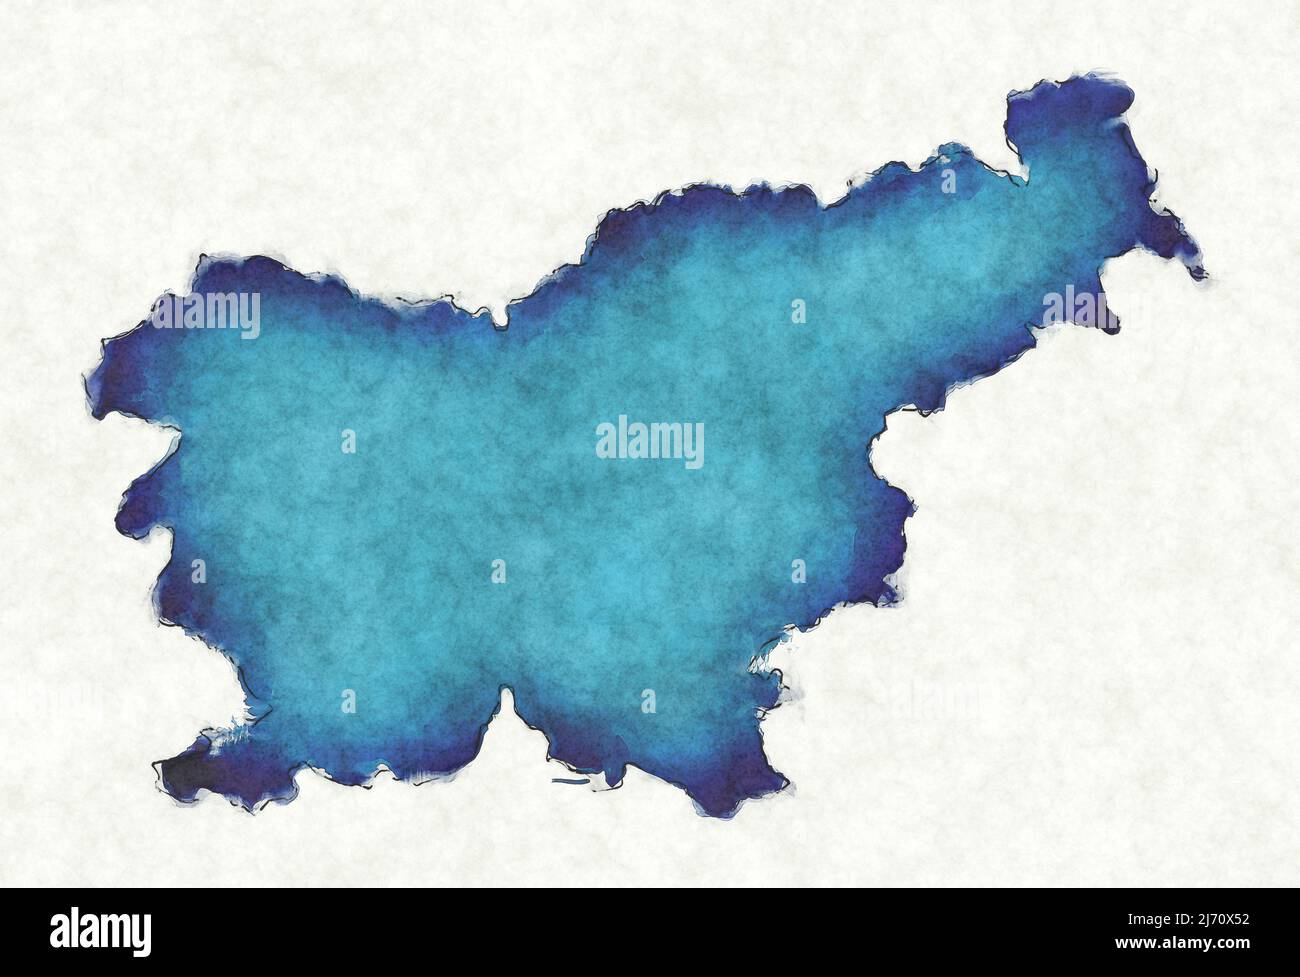 Mapa de Eslovenia con líneas trazadas e ilustración de acuarela azul Foto de stock